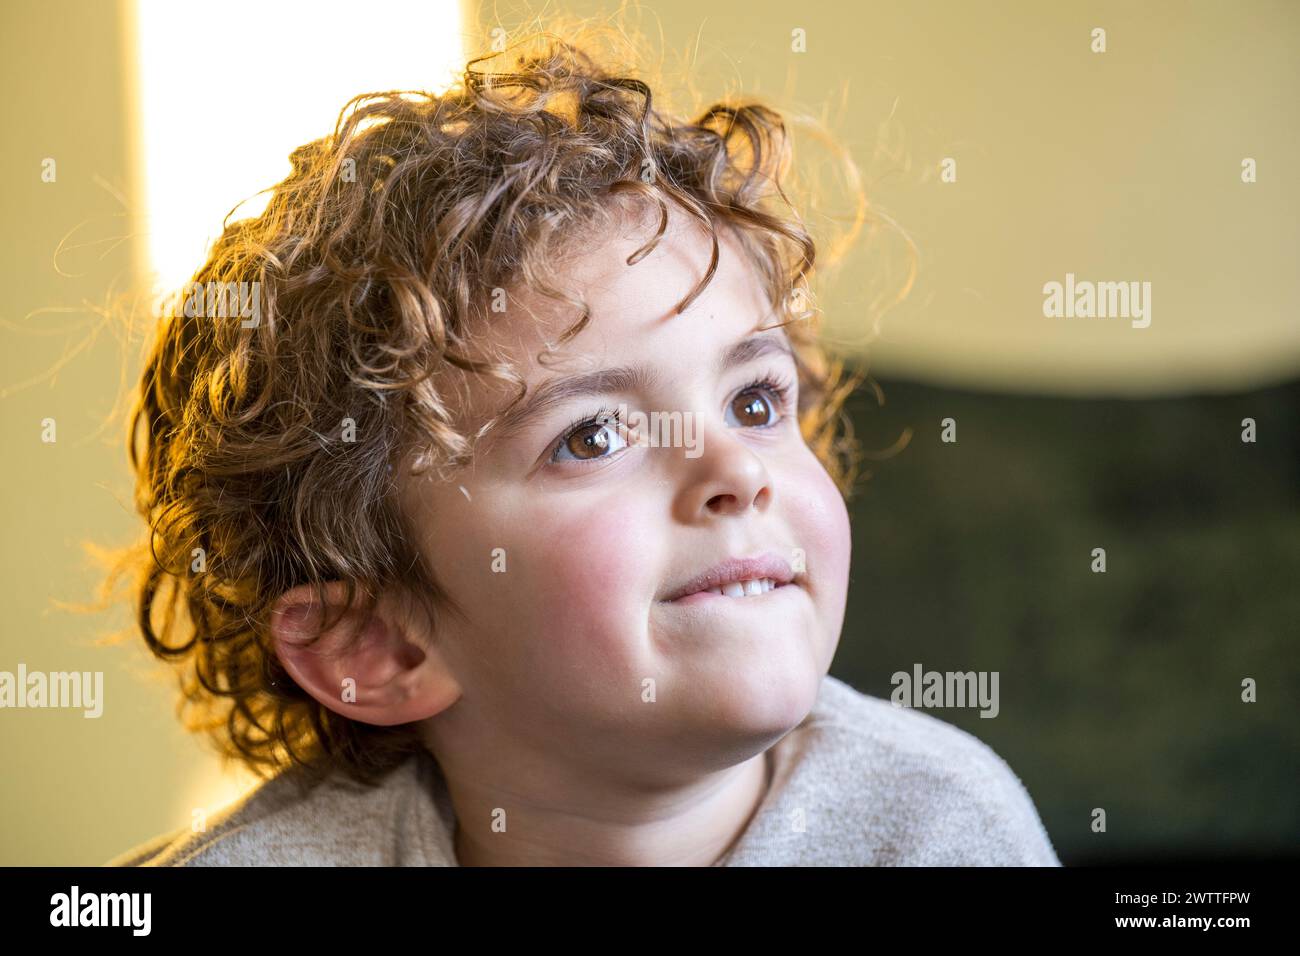 Kleines Kind mit lockigen Haaren, das in einem warmen, beleuchteten Zimmer nachdenklich aufblickt. Stockfoto